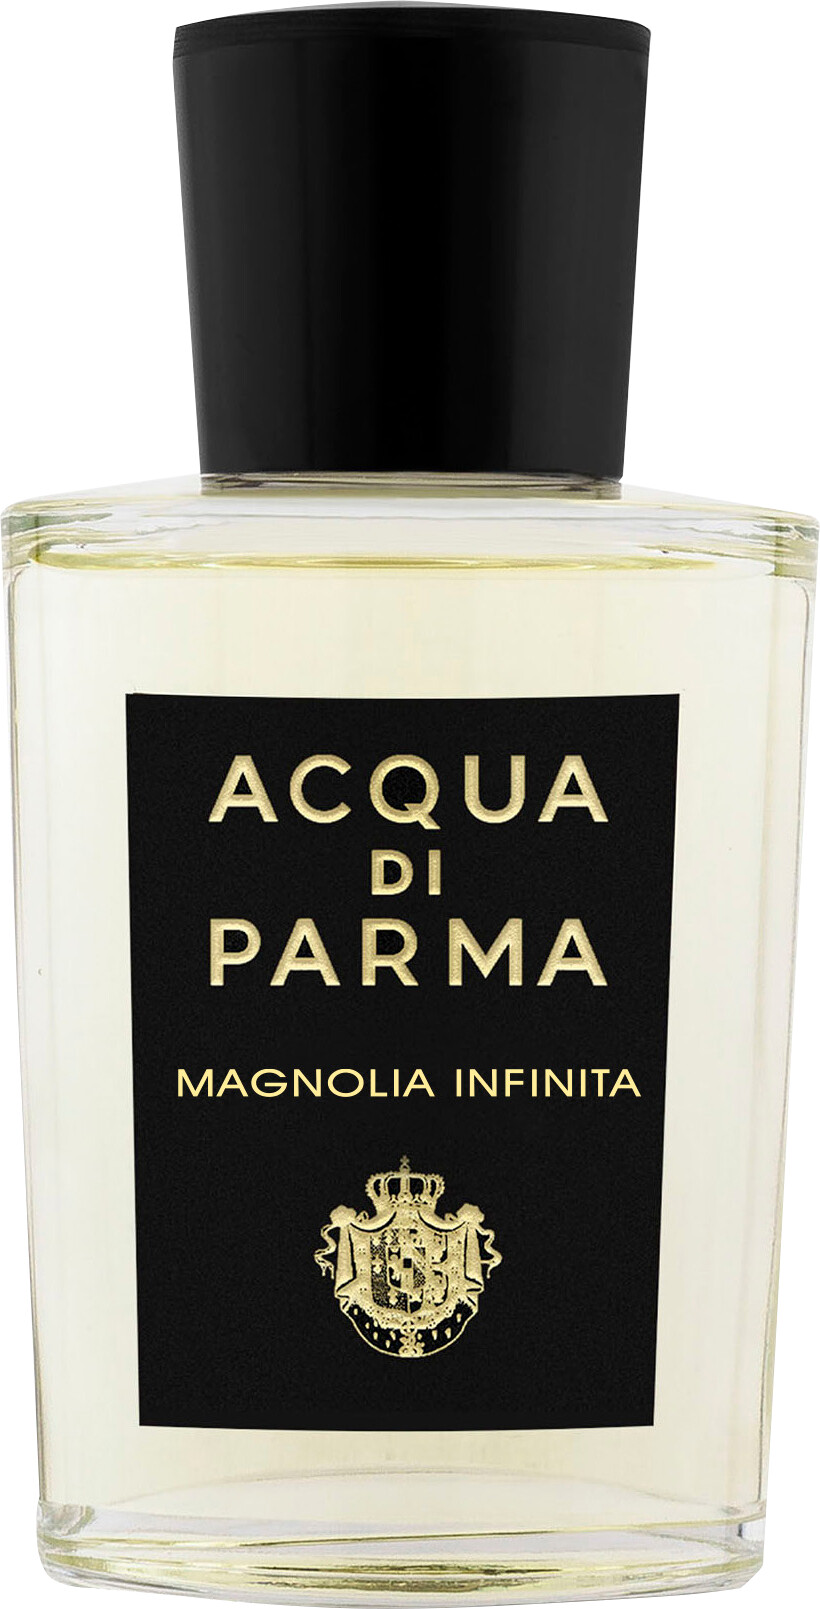 Acqua di Parma Magnolia Infinita Eau de Parfum Spray 100ml